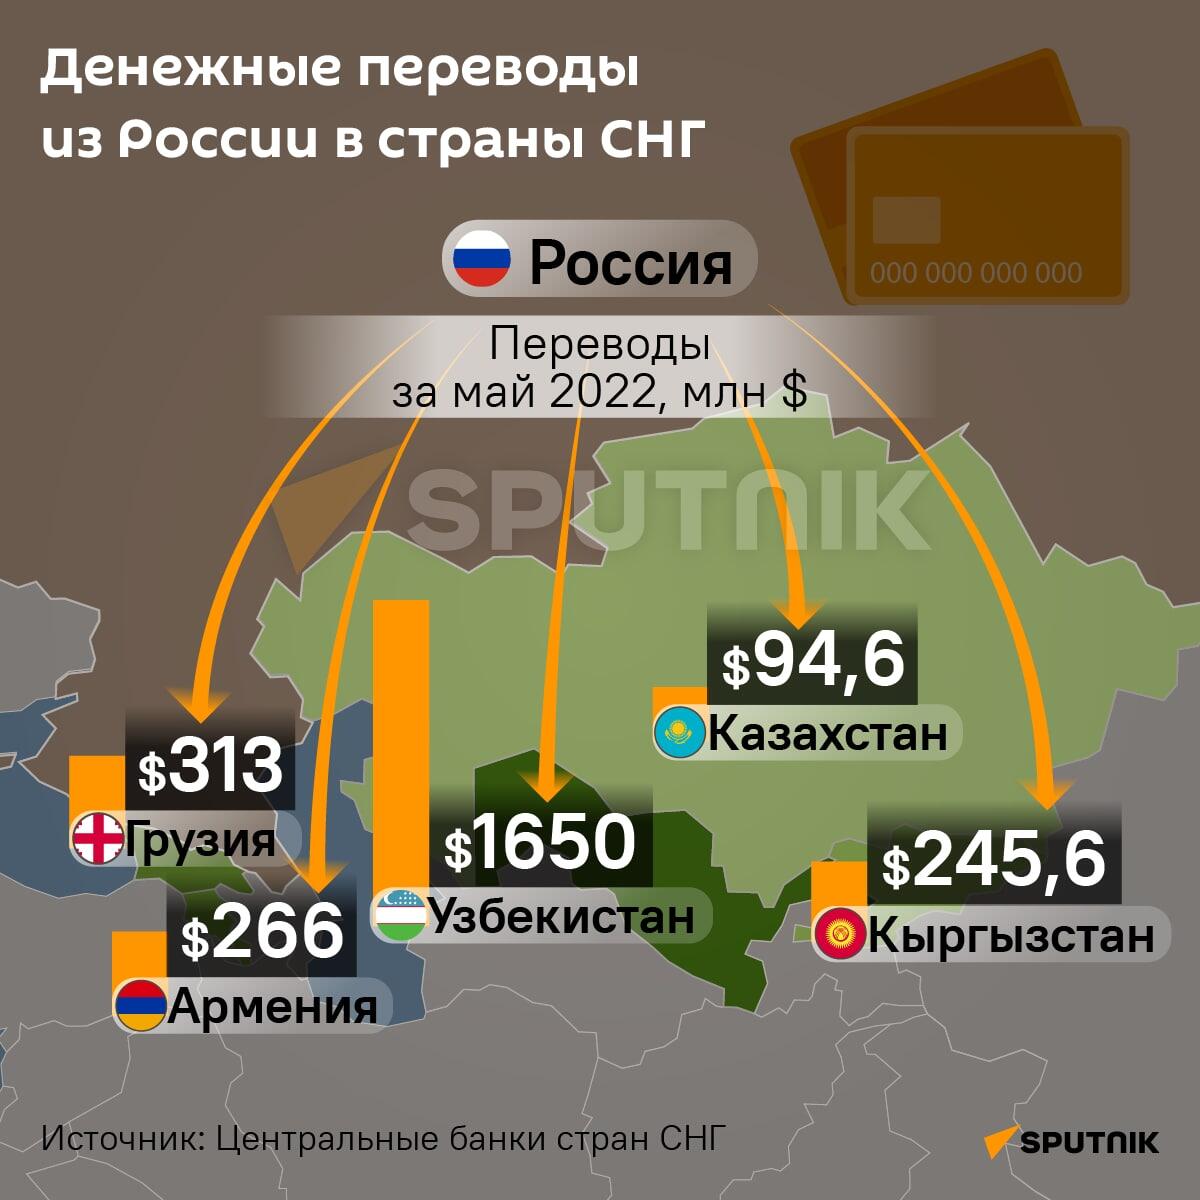 Сколько мигрантов в россии 2024 году